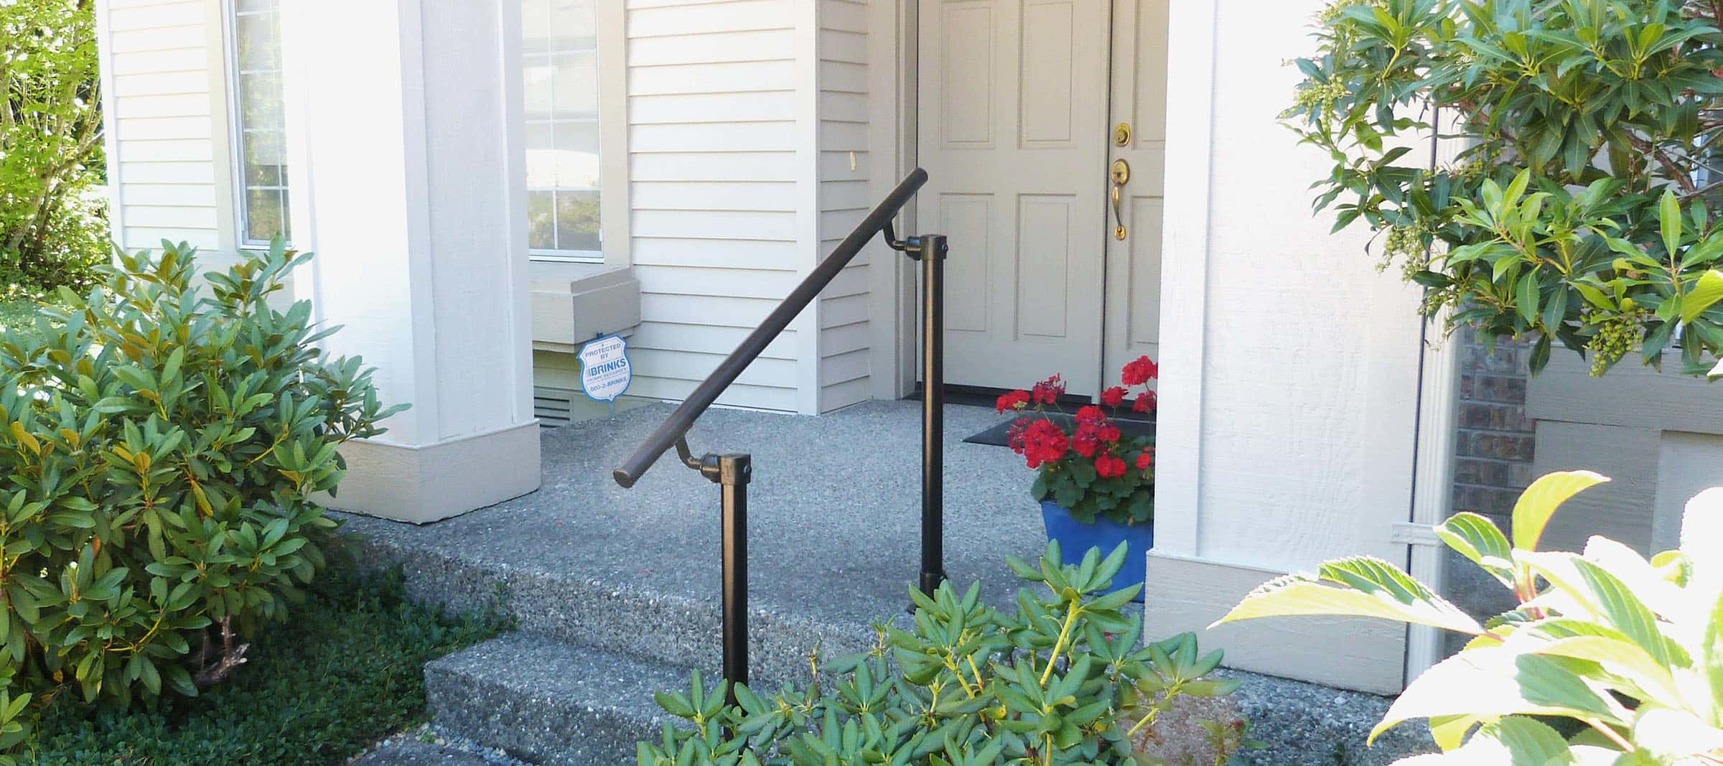 Industrial Handrail For Banisters Inside Steps Outside Handicapped Elderly And Children Matt Black Wrought Iron Stair Handrail-30cm I VAN